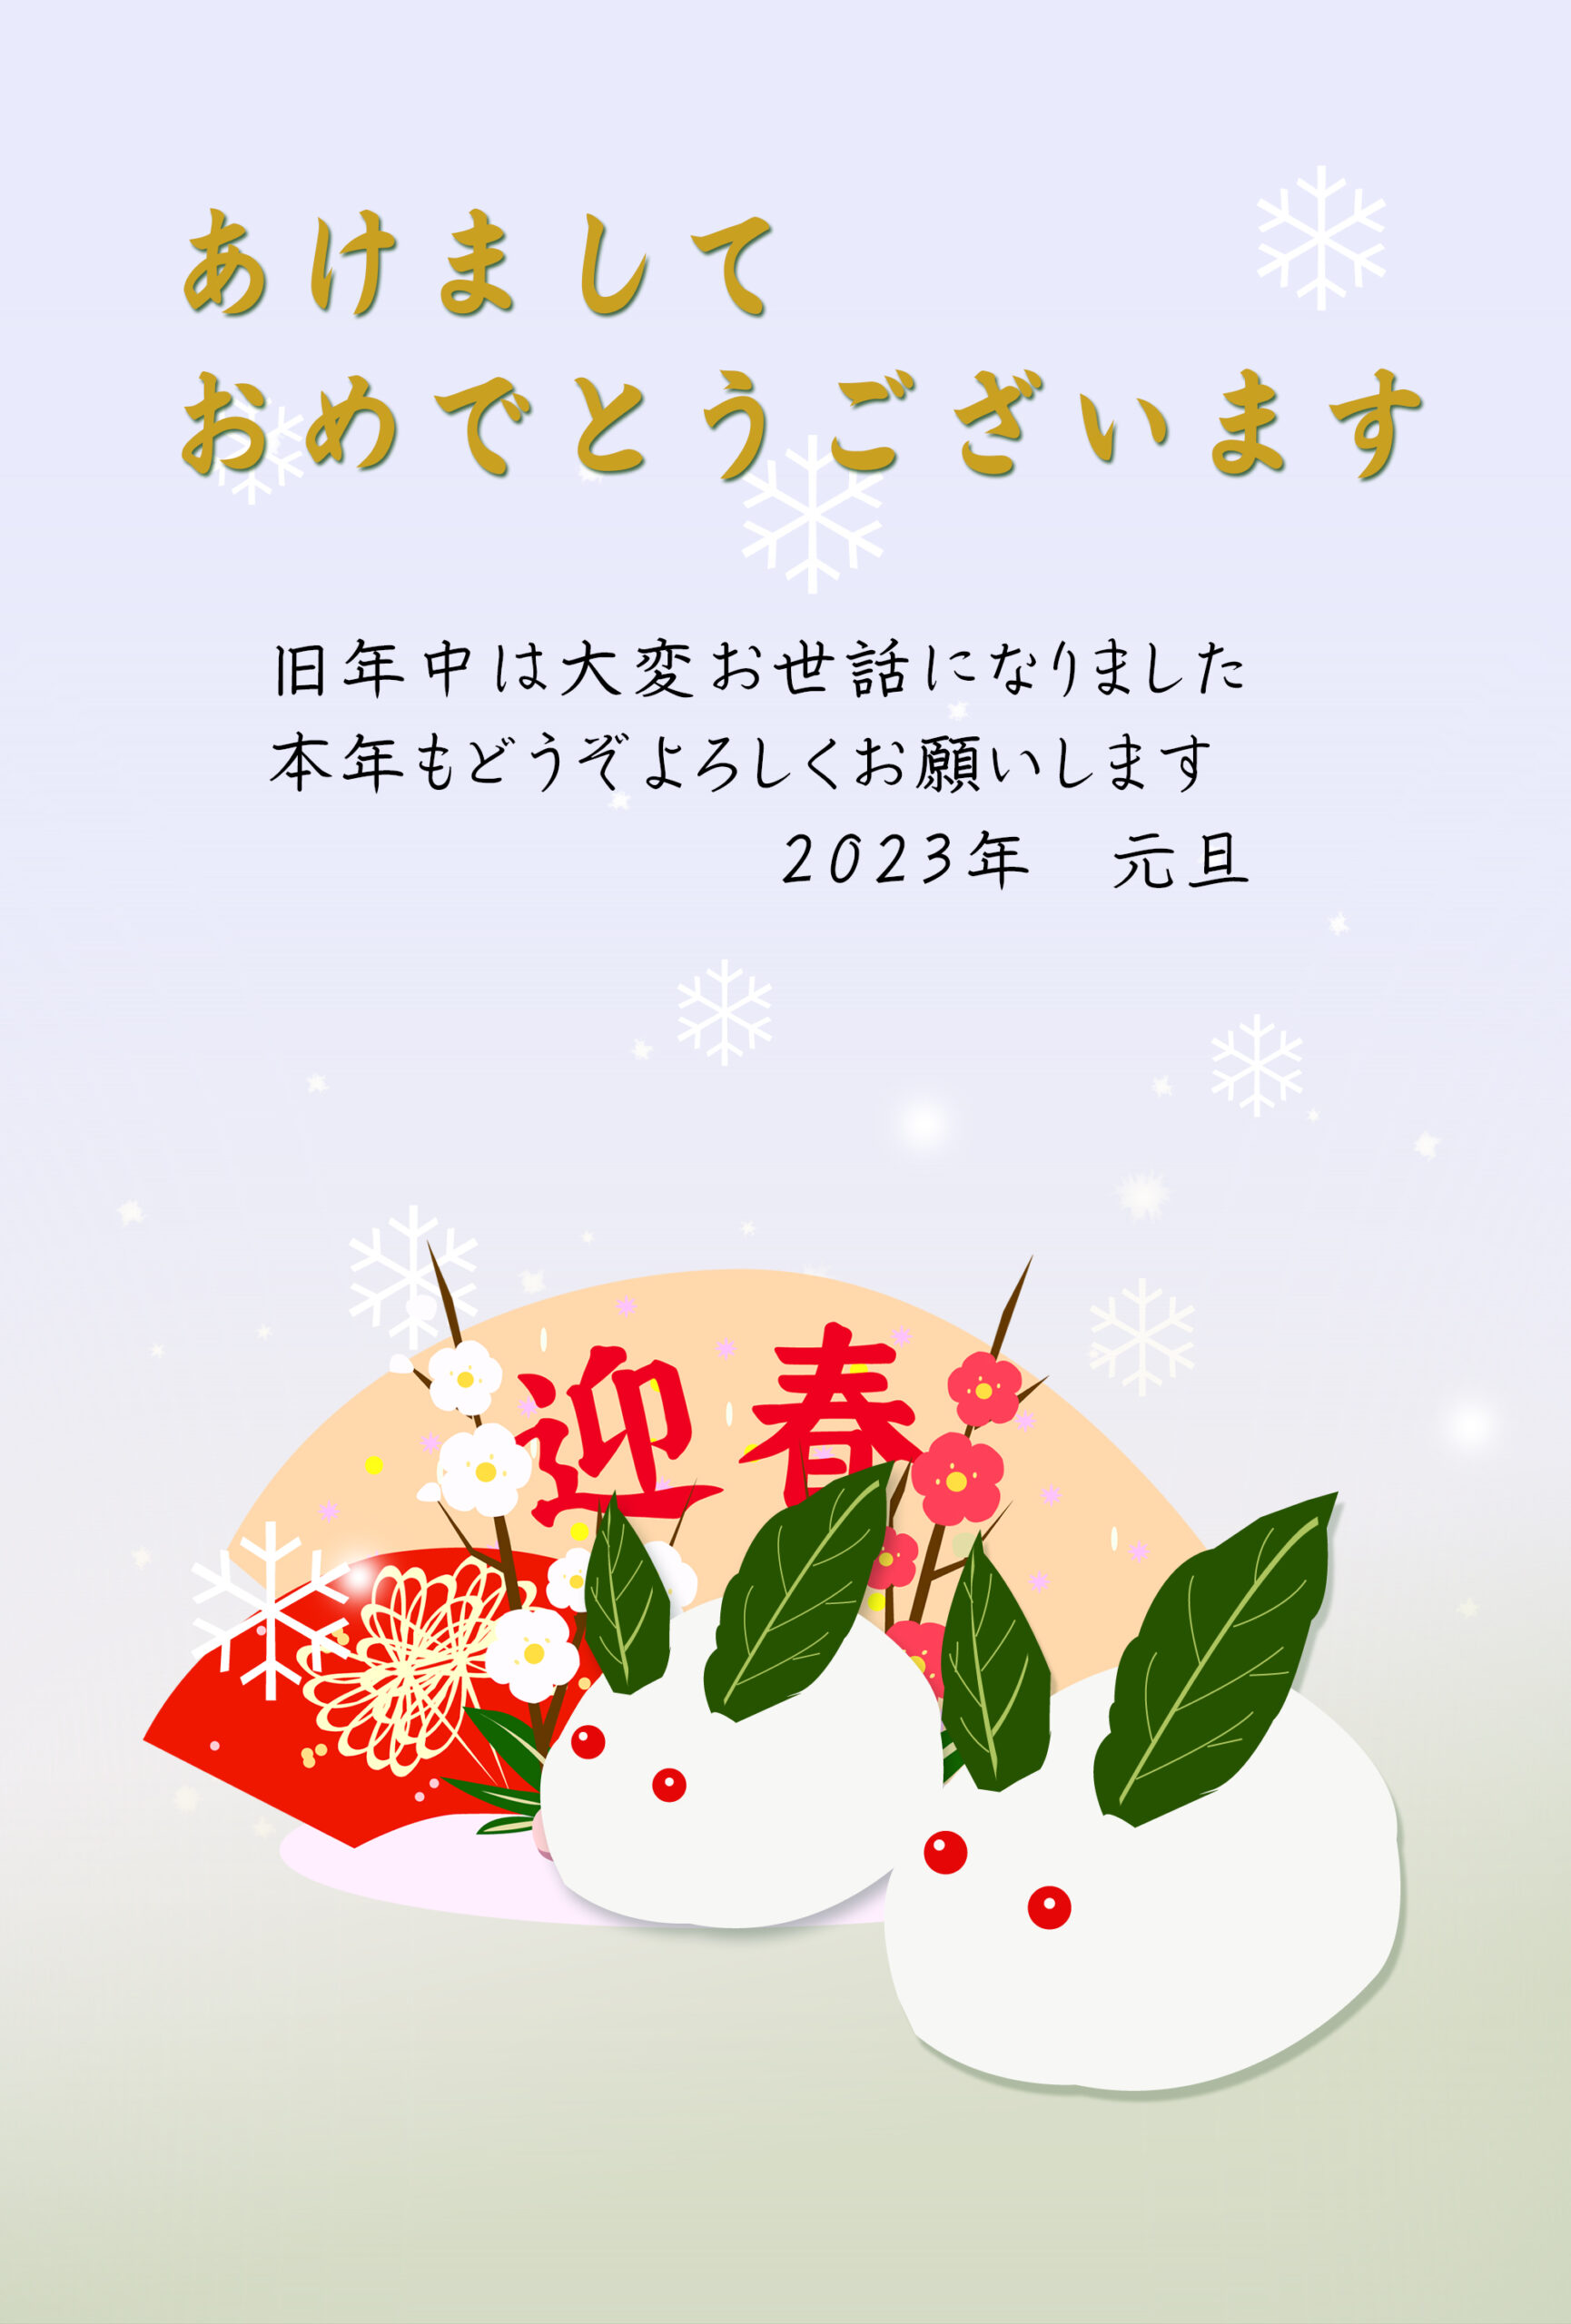 雪うさぎと正月飾りのイラスト入り 卯年デザイン年賀状 | プリント